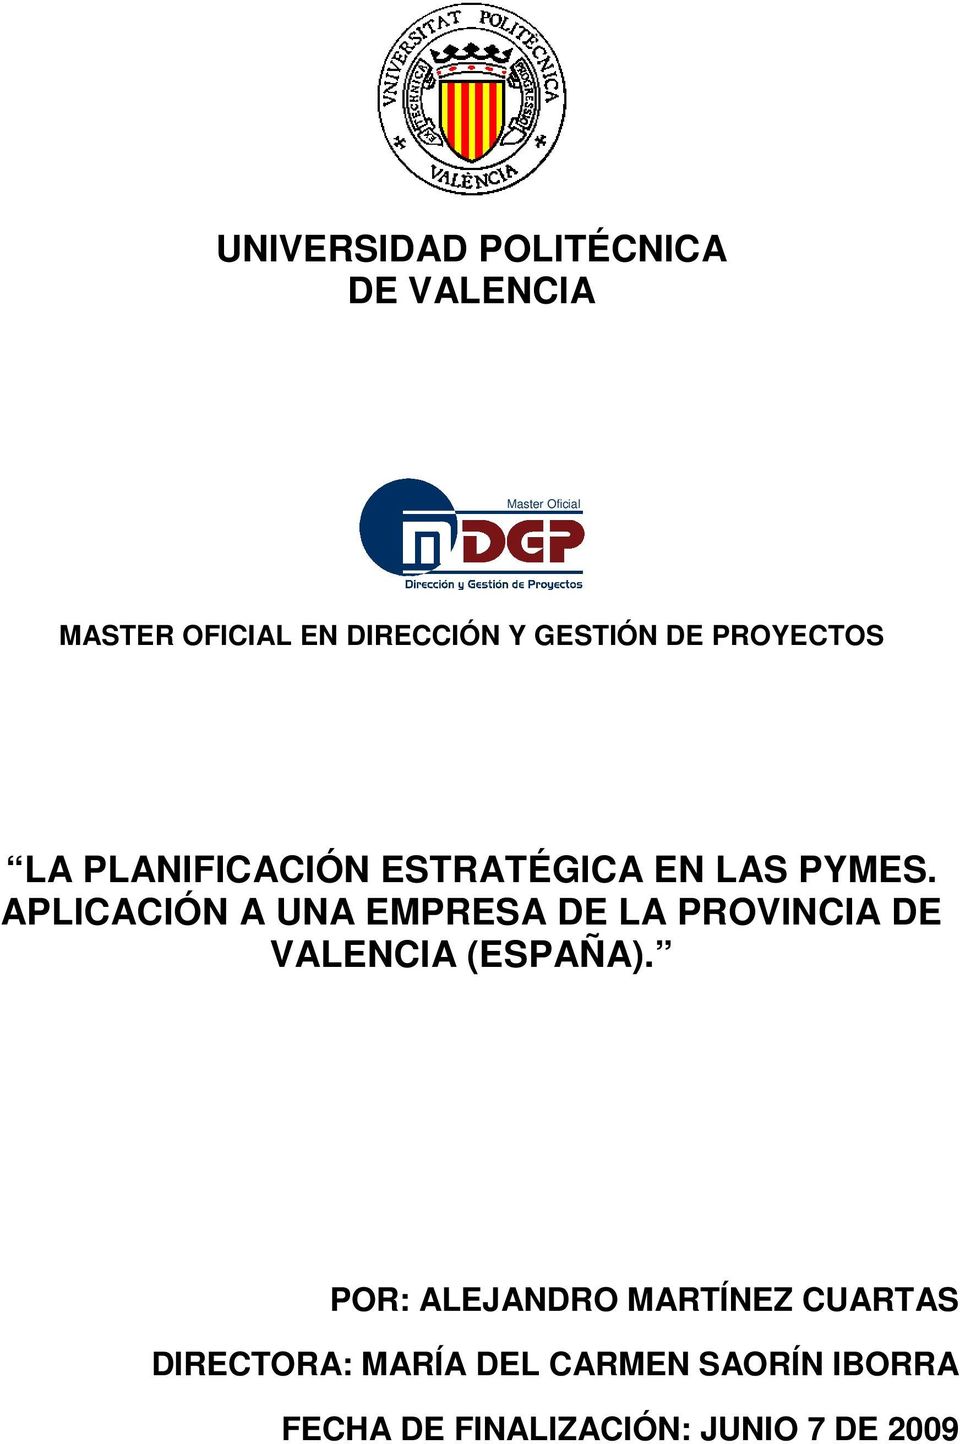 APLICACIÓN A UNA EMPRESA DE LA PROVINCIA DE VALENCIA (ESPAÑA).